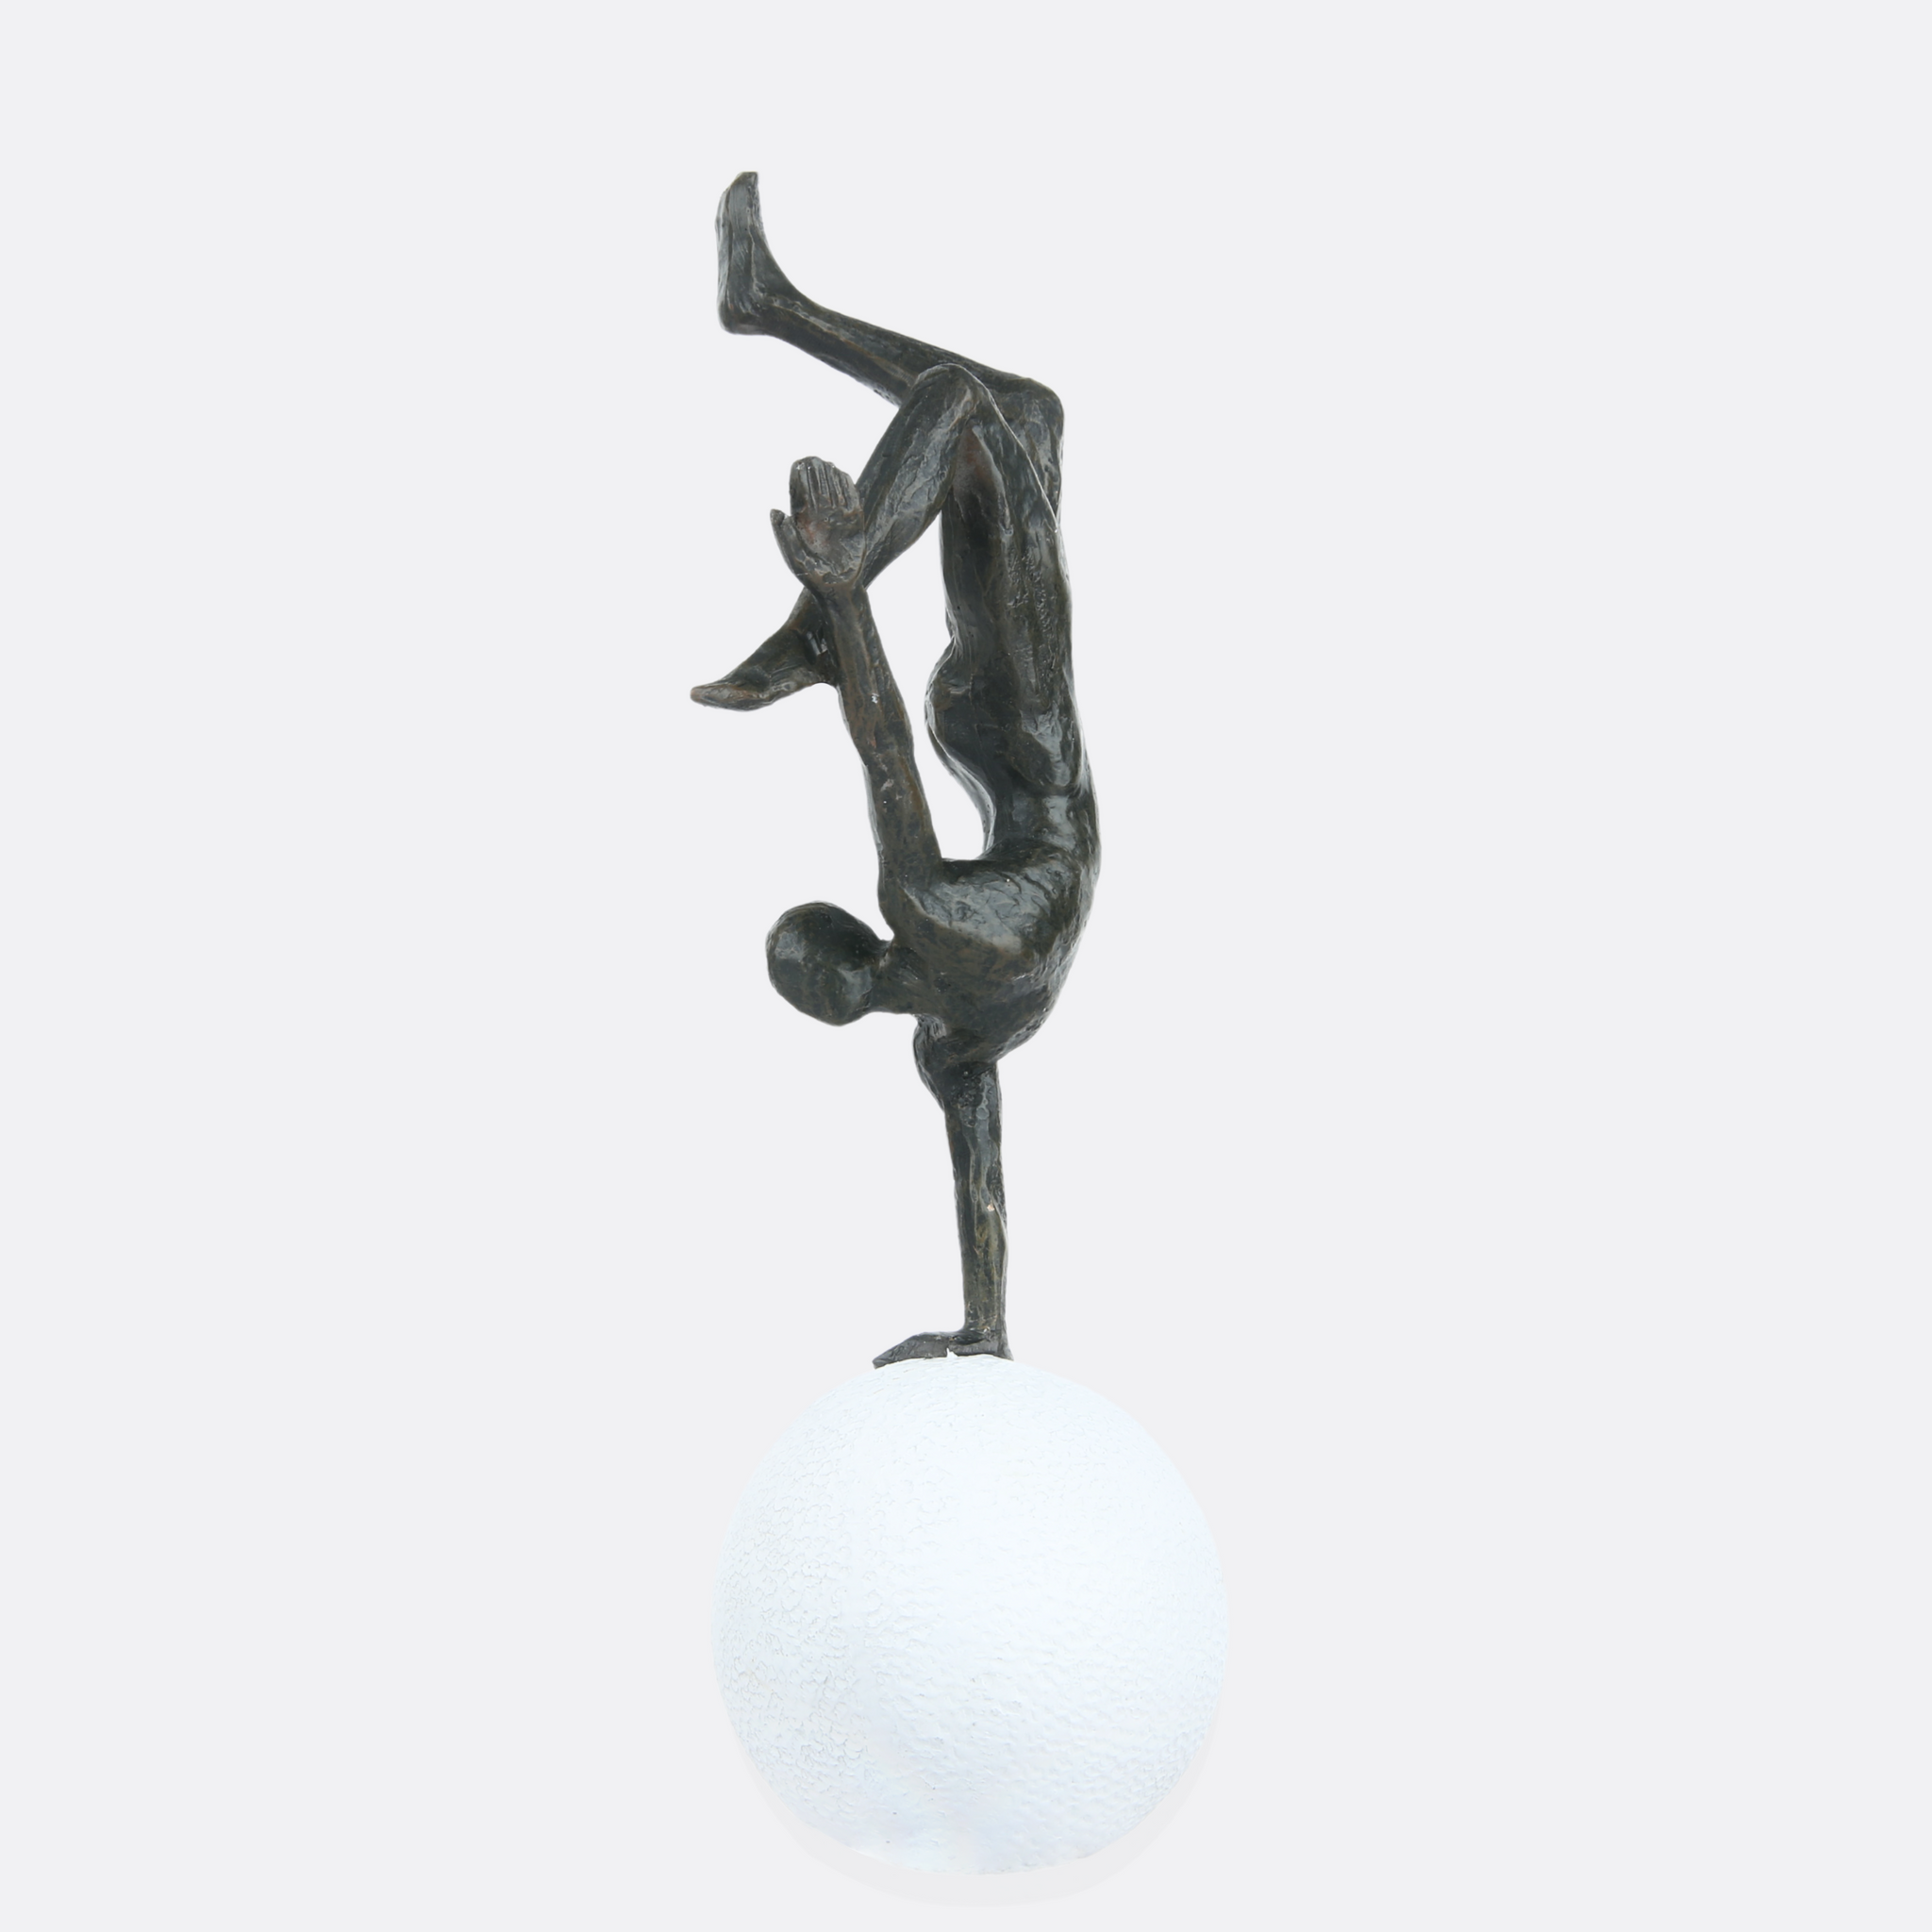 Acrobatic Man On White Ball